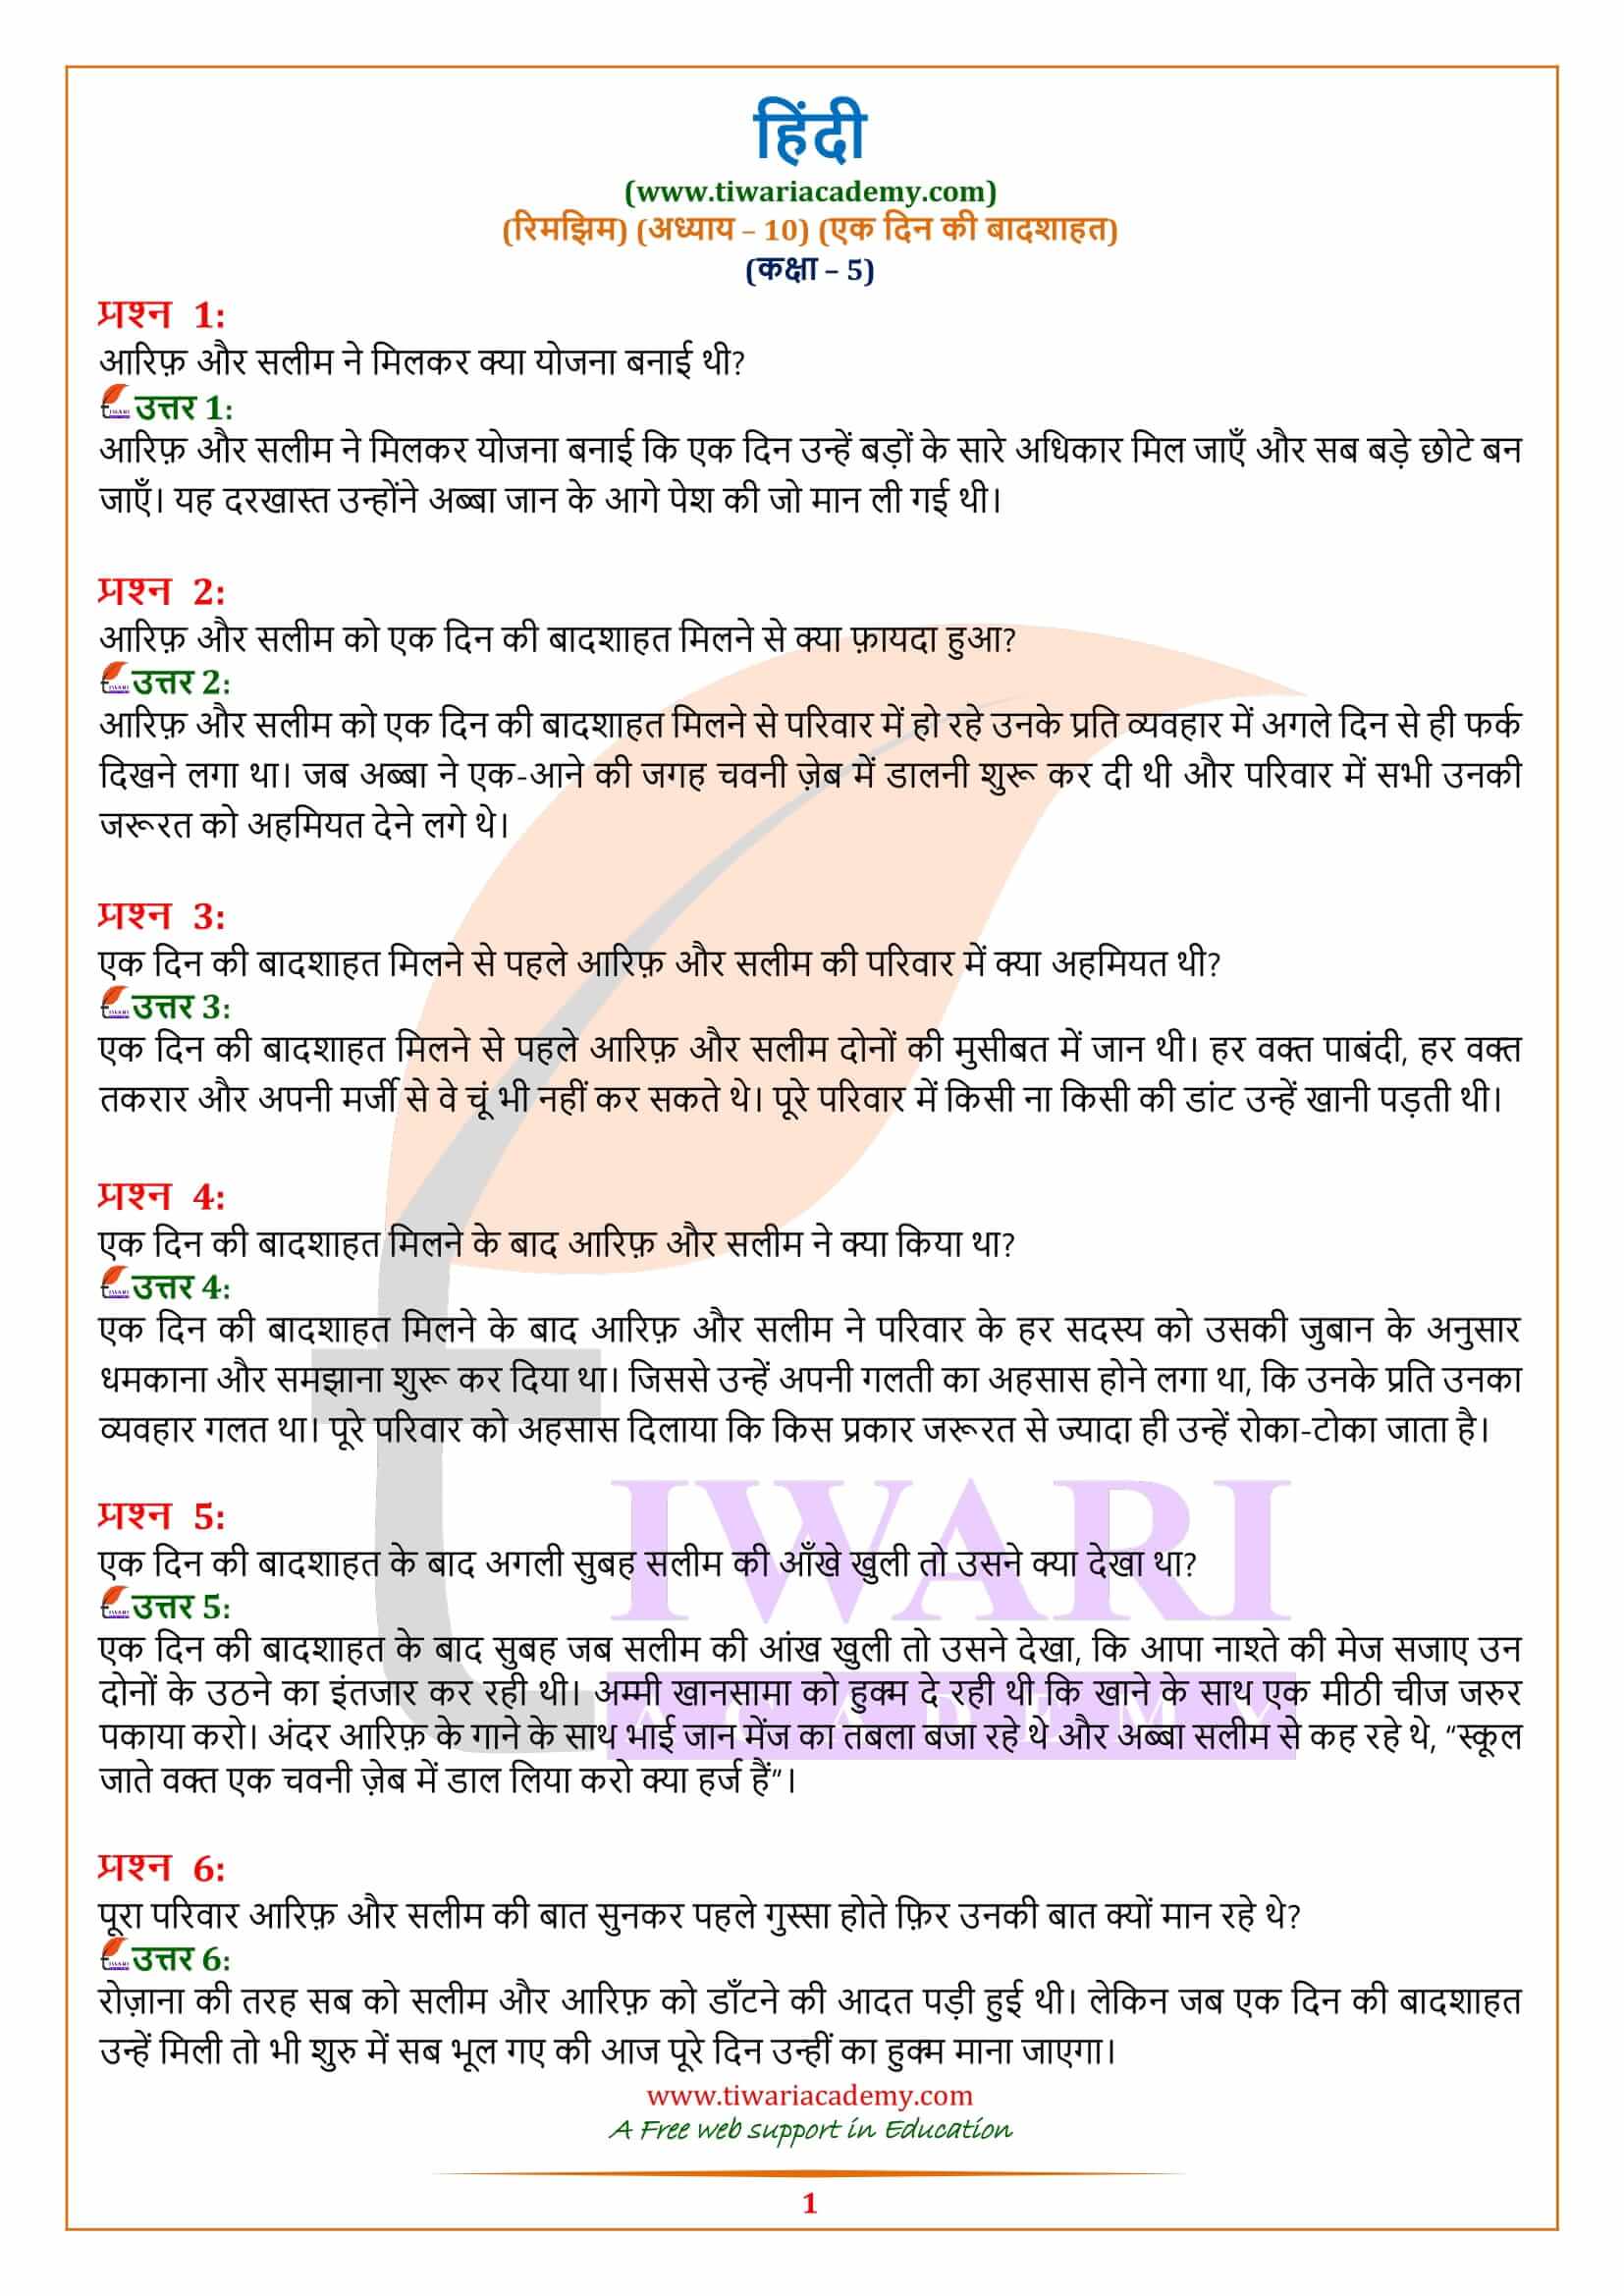 एनसीईआरटी समाधान कक्षा 5 हिंदी अध्याय 10 एक दिन की बादशाहत